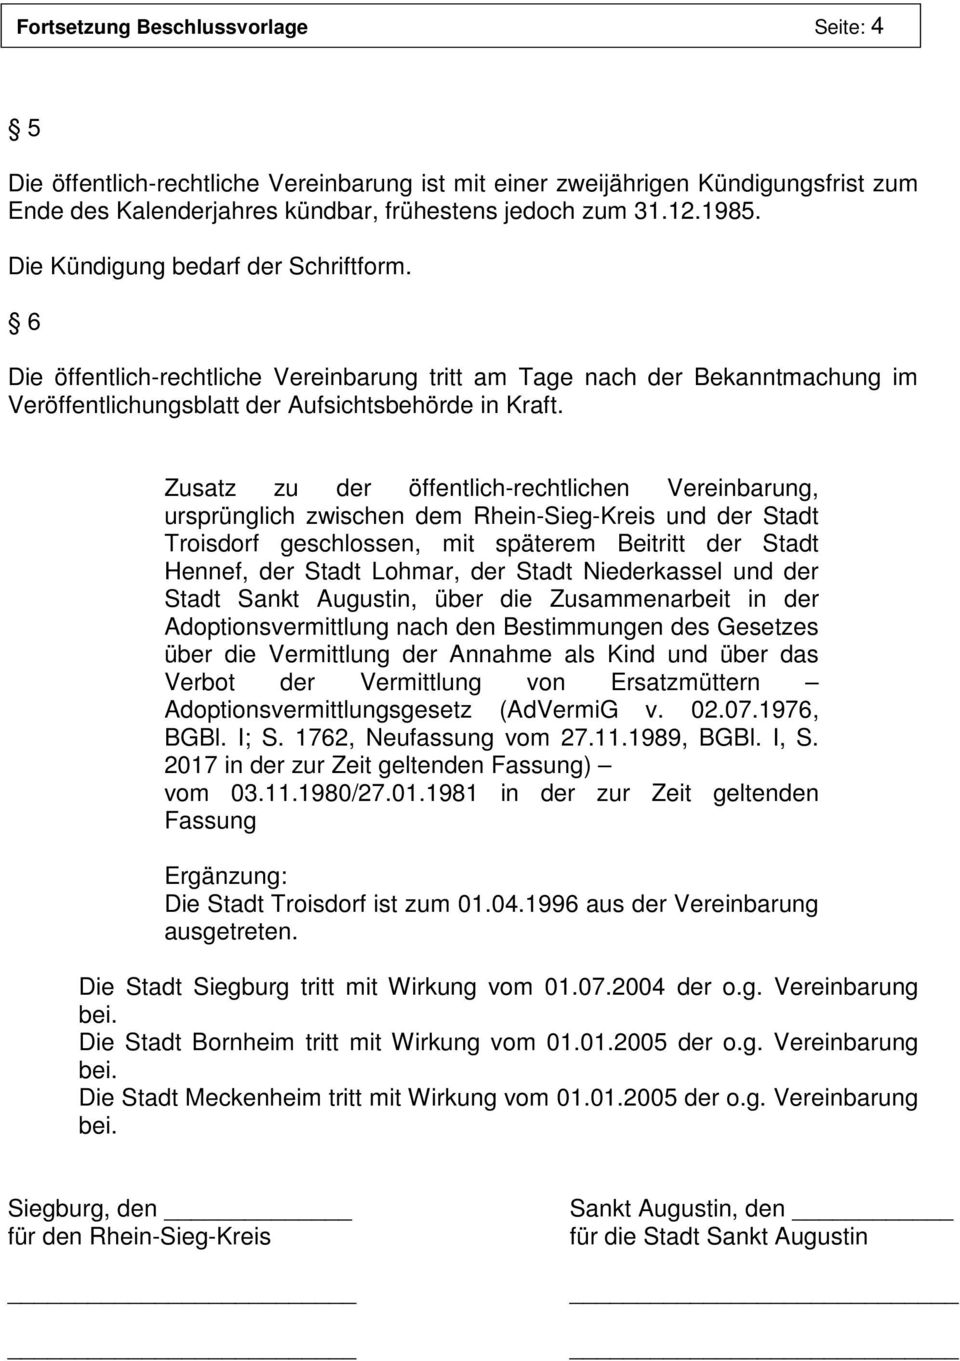 Zusatz zu der öffentlich-rechtlichen Vereinbarung, ursprünglich zwischen dem Rhein-Sieg-Kreis und der Stadt Troisdorf geschlossen, mit späterem Beitritt der Stadt Hennef, der Stadt Lohmar, der Stadt